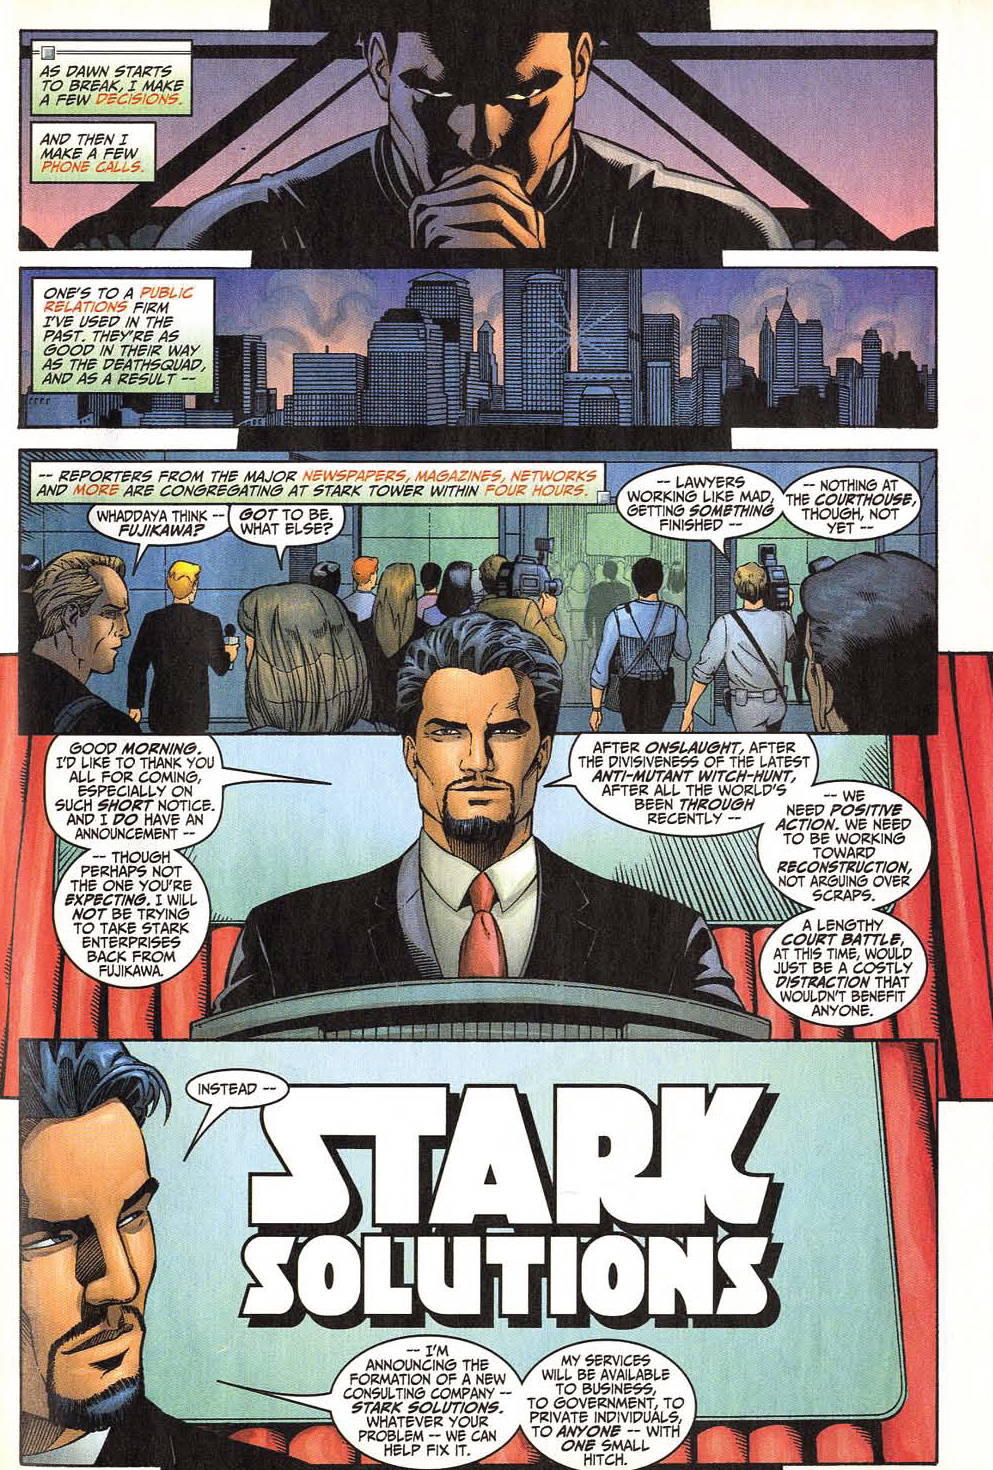 Iron Man (1998) 1 Page 44